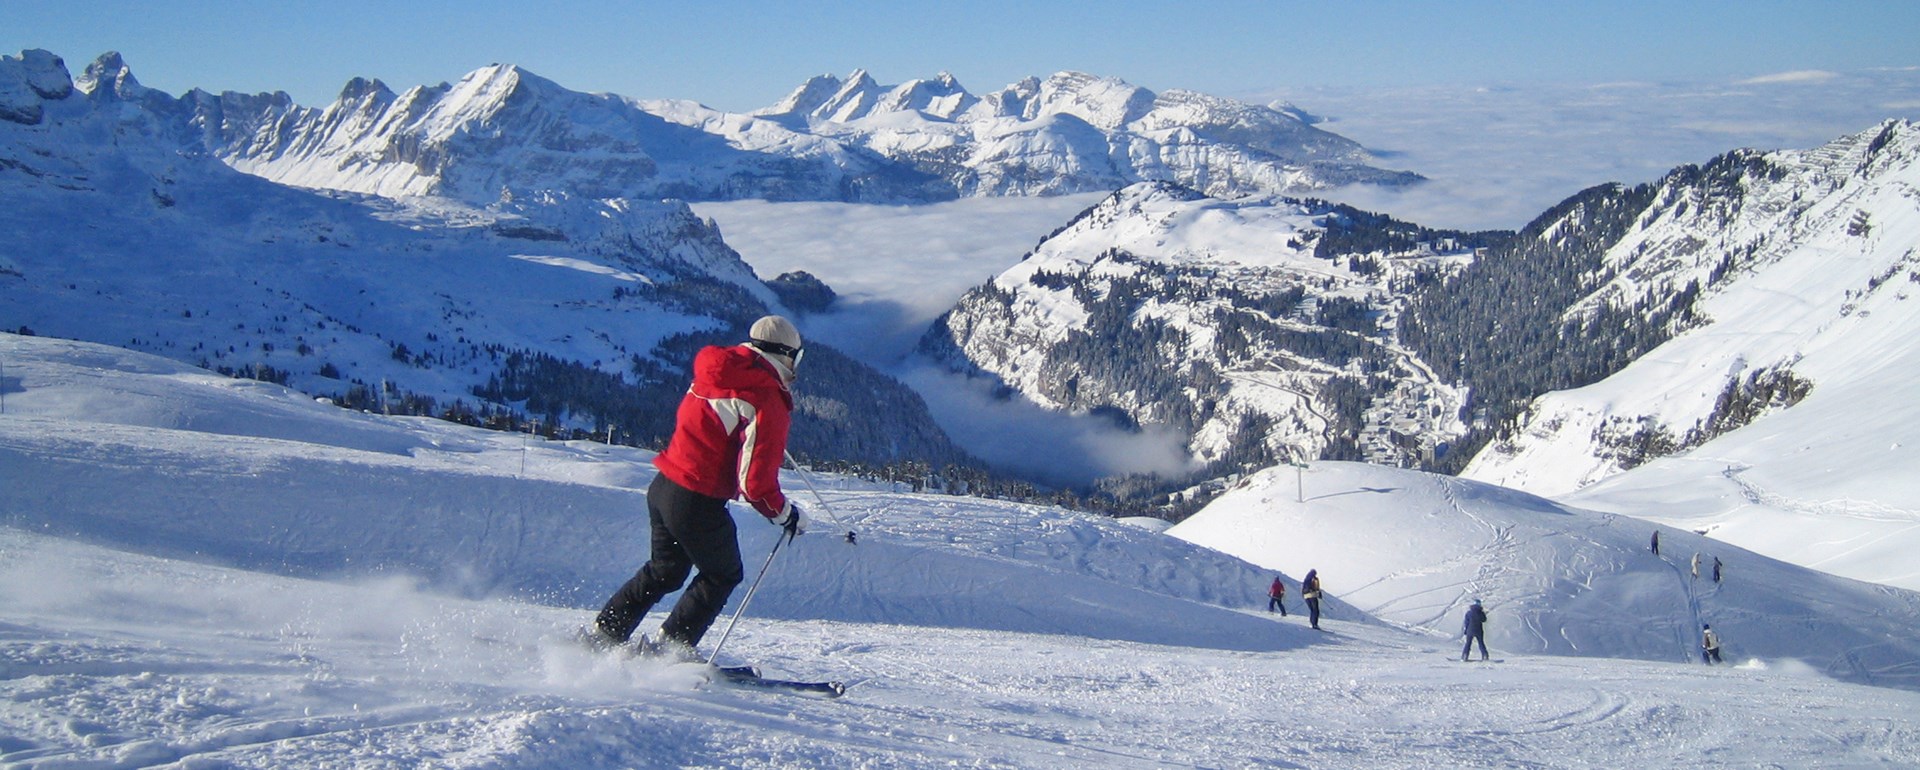 Grand Massif-Flaine Ski Slopes